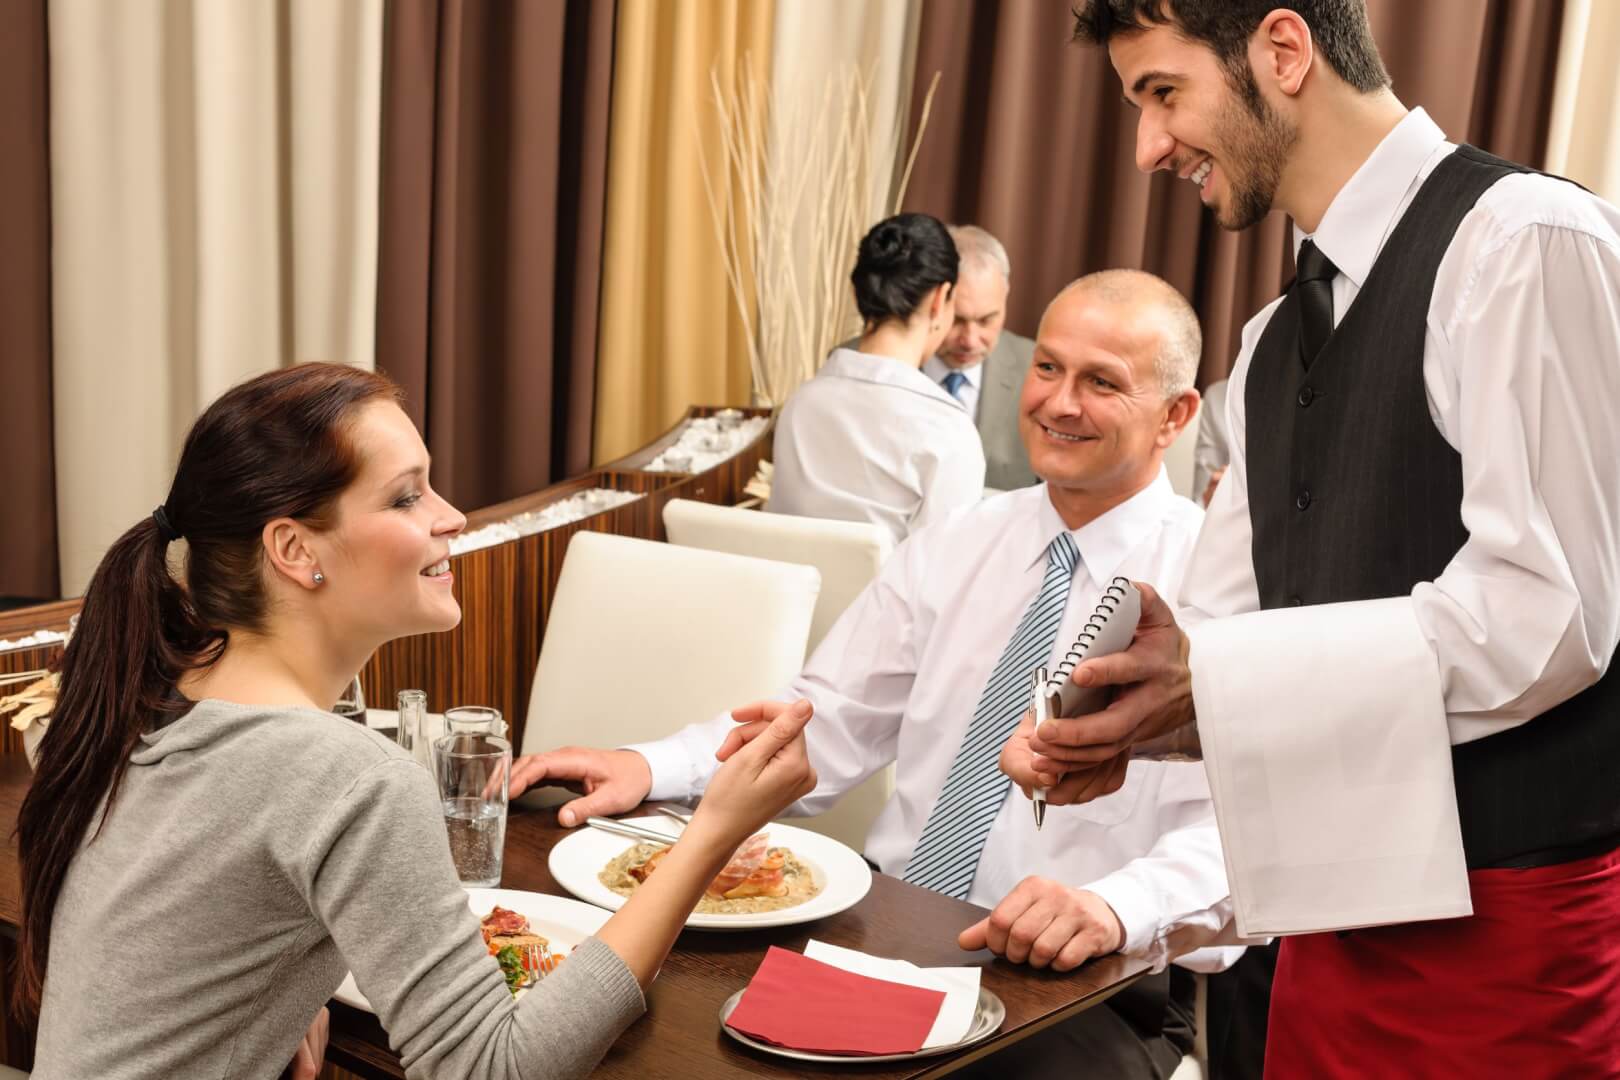 Ресторанный этикет: учимся вести себя в заведениях правильно - секреты гастрономии